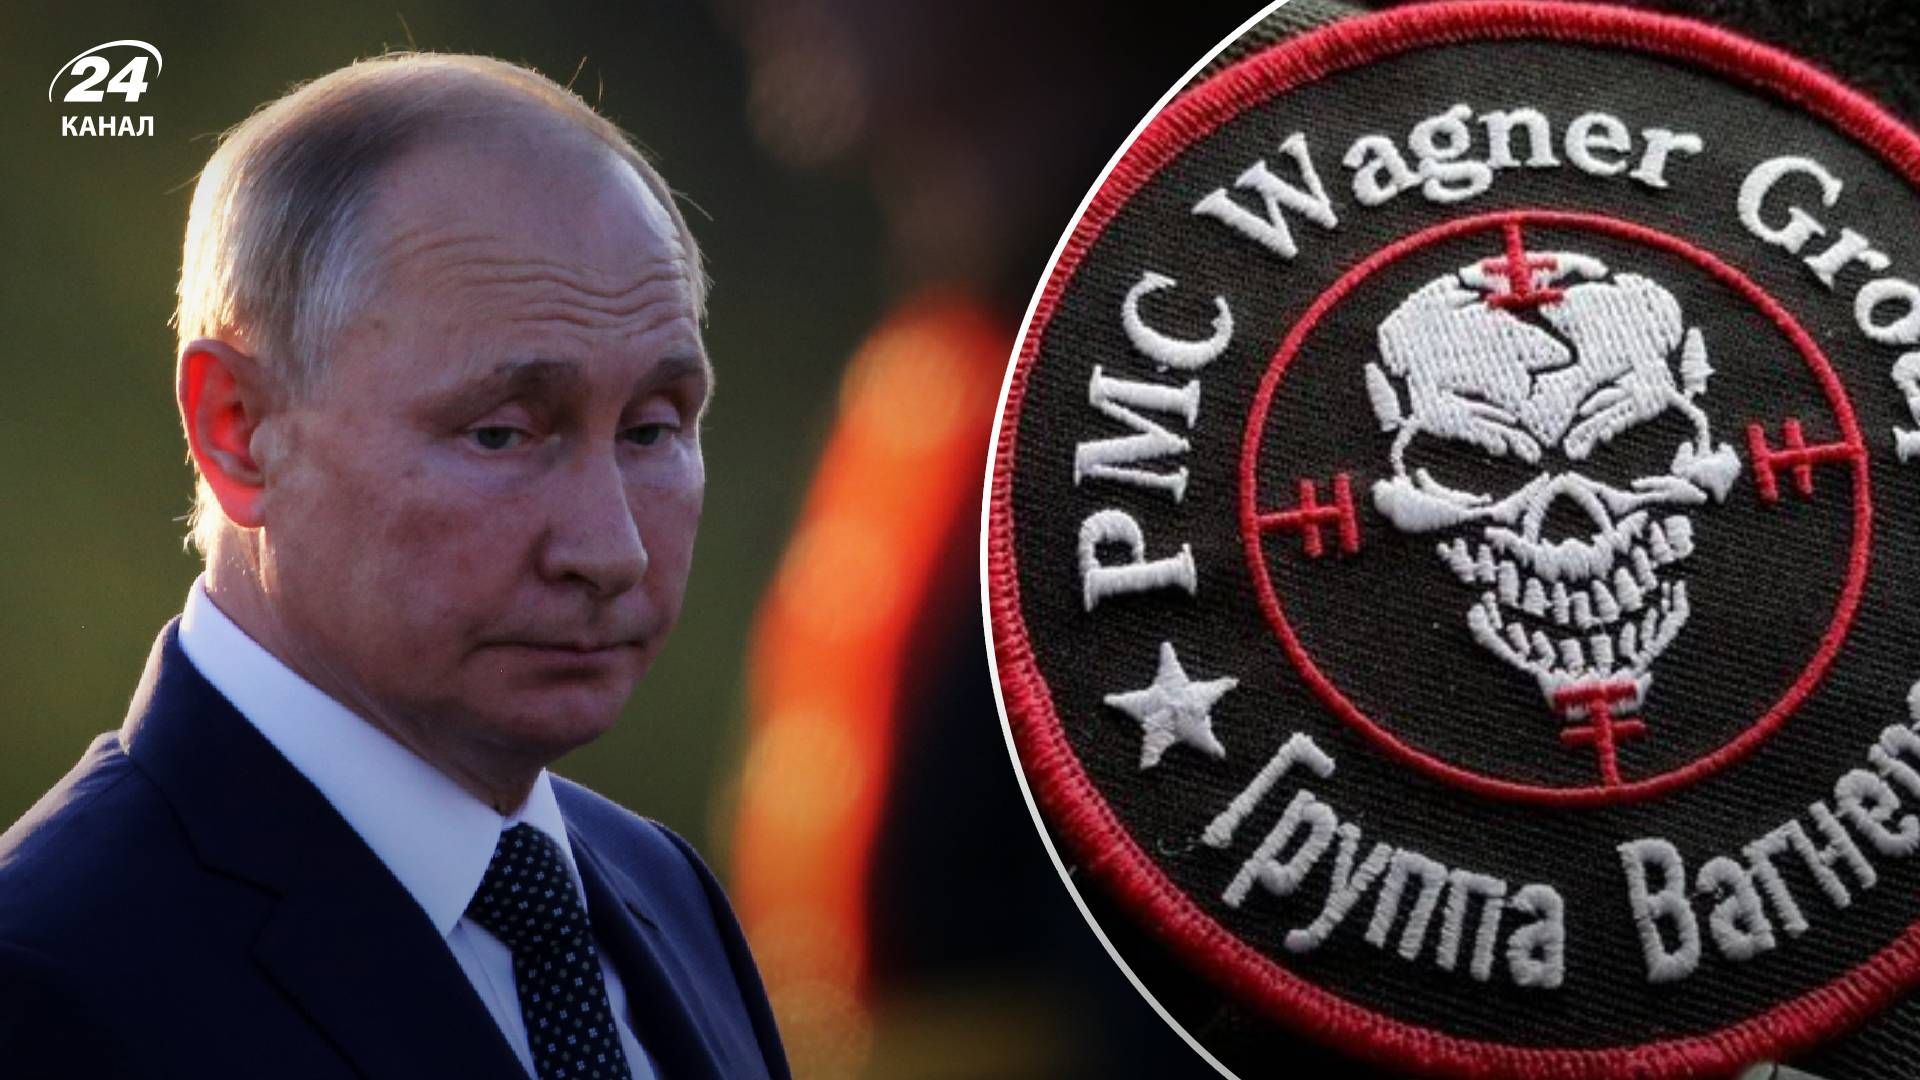 Новые ордера на арест Путина – какие перспективы трибунала в Гааге против Путнина